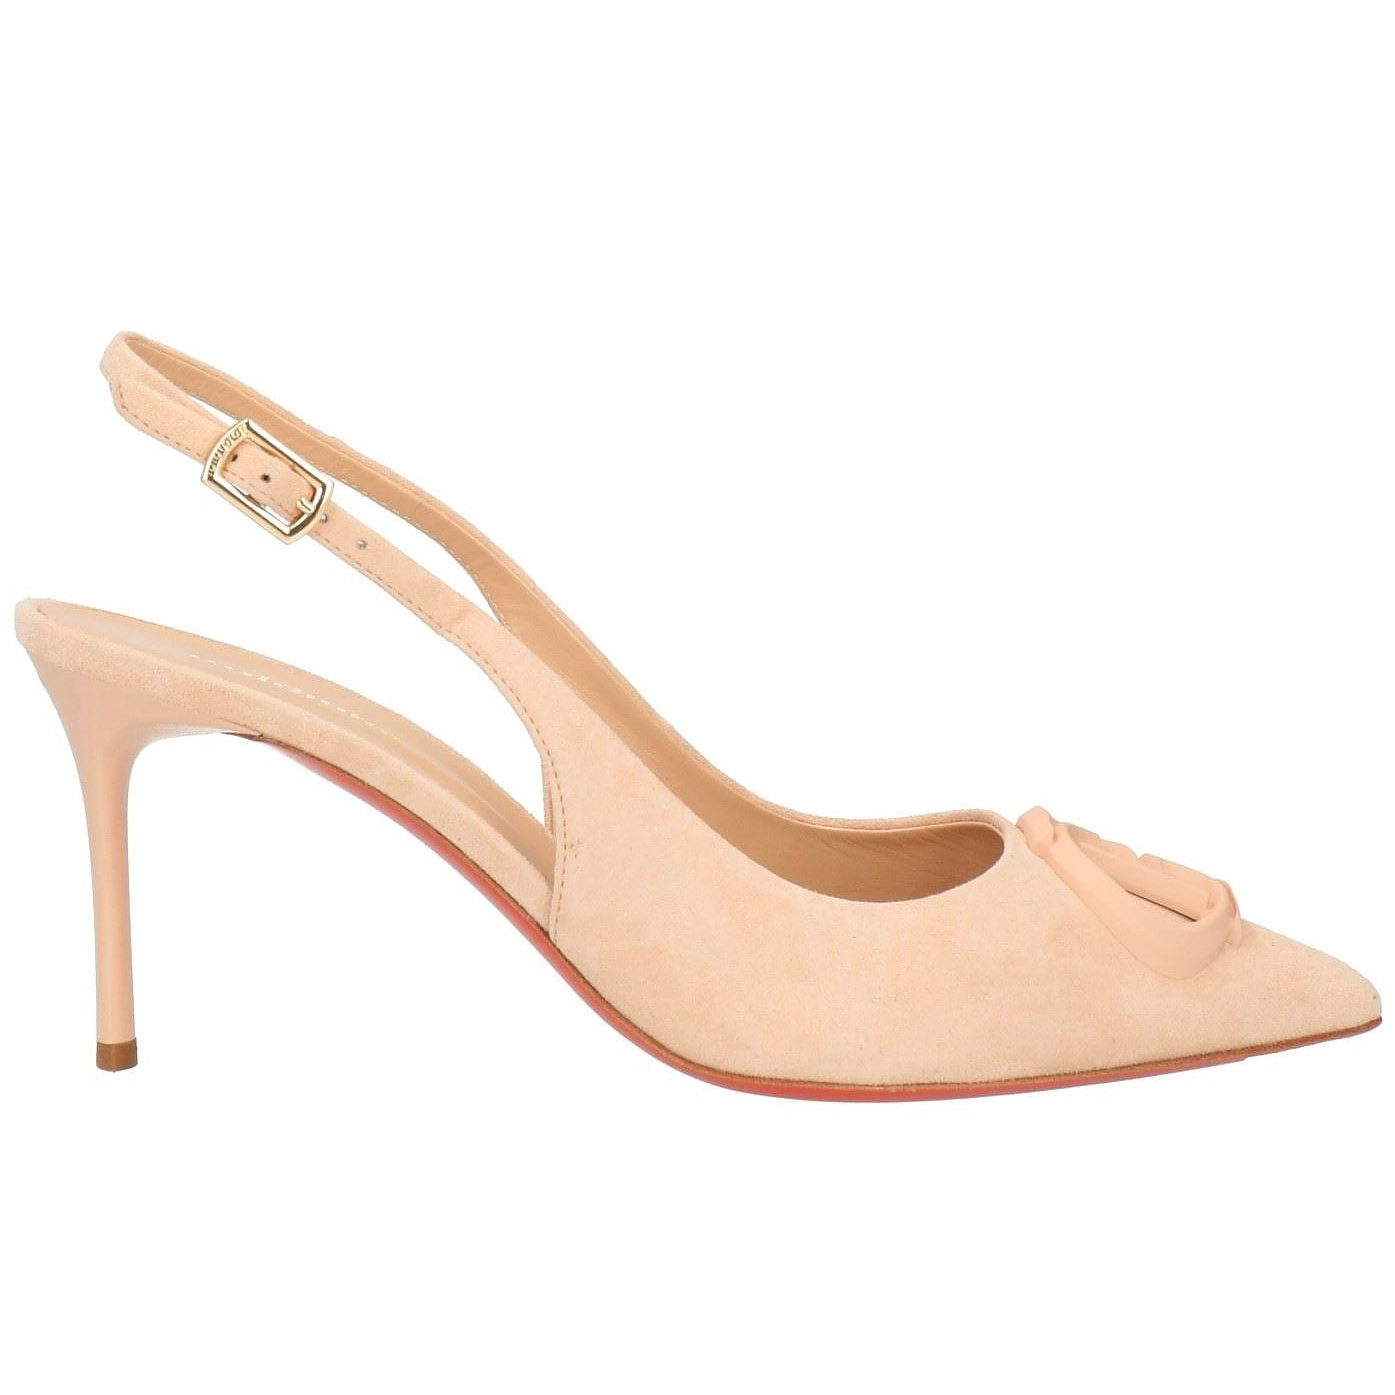 Туфли Baldinini, бежевато-розовый туфли на высоком каблуке 18 см туфли на высоком каблуке туфли на высоком каблуке подмодели для съемки фотографий танцевальная обувь